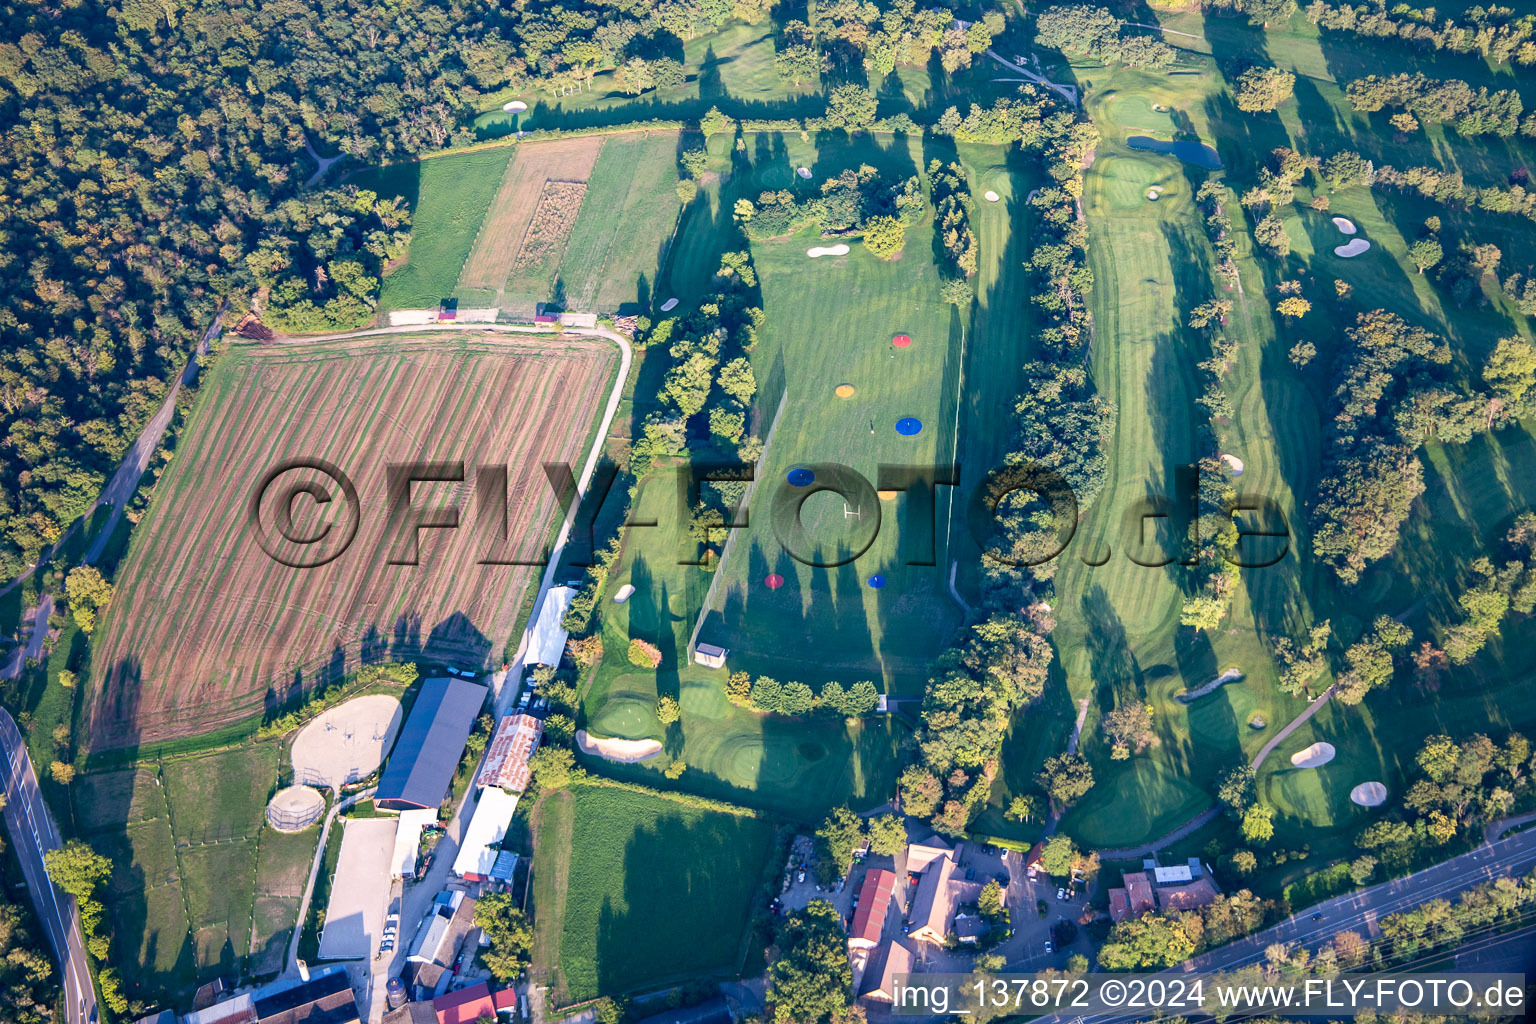 Schrägluftbild von Golf Club Strasbourg in Illkirch-Graffenstaden im Bundesland Bas-Rhin, Frankreich